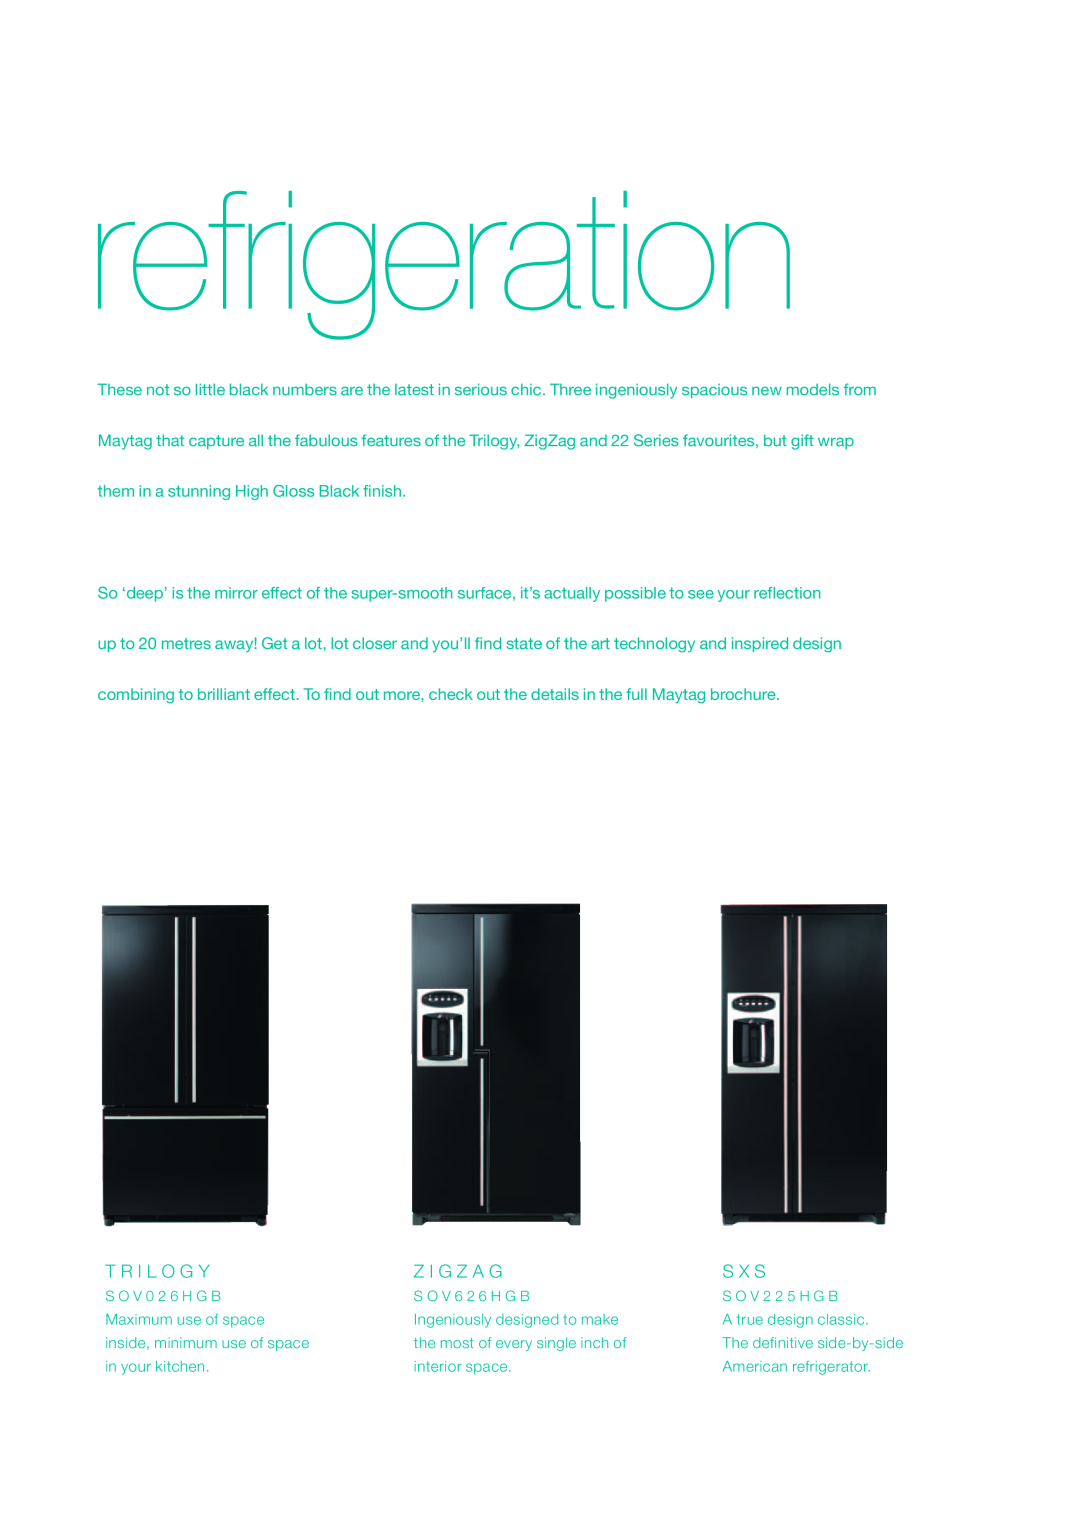 Maytag 2007/8 manual refrigeration, T R I L O G Y, Z I G Z A G, S X S 